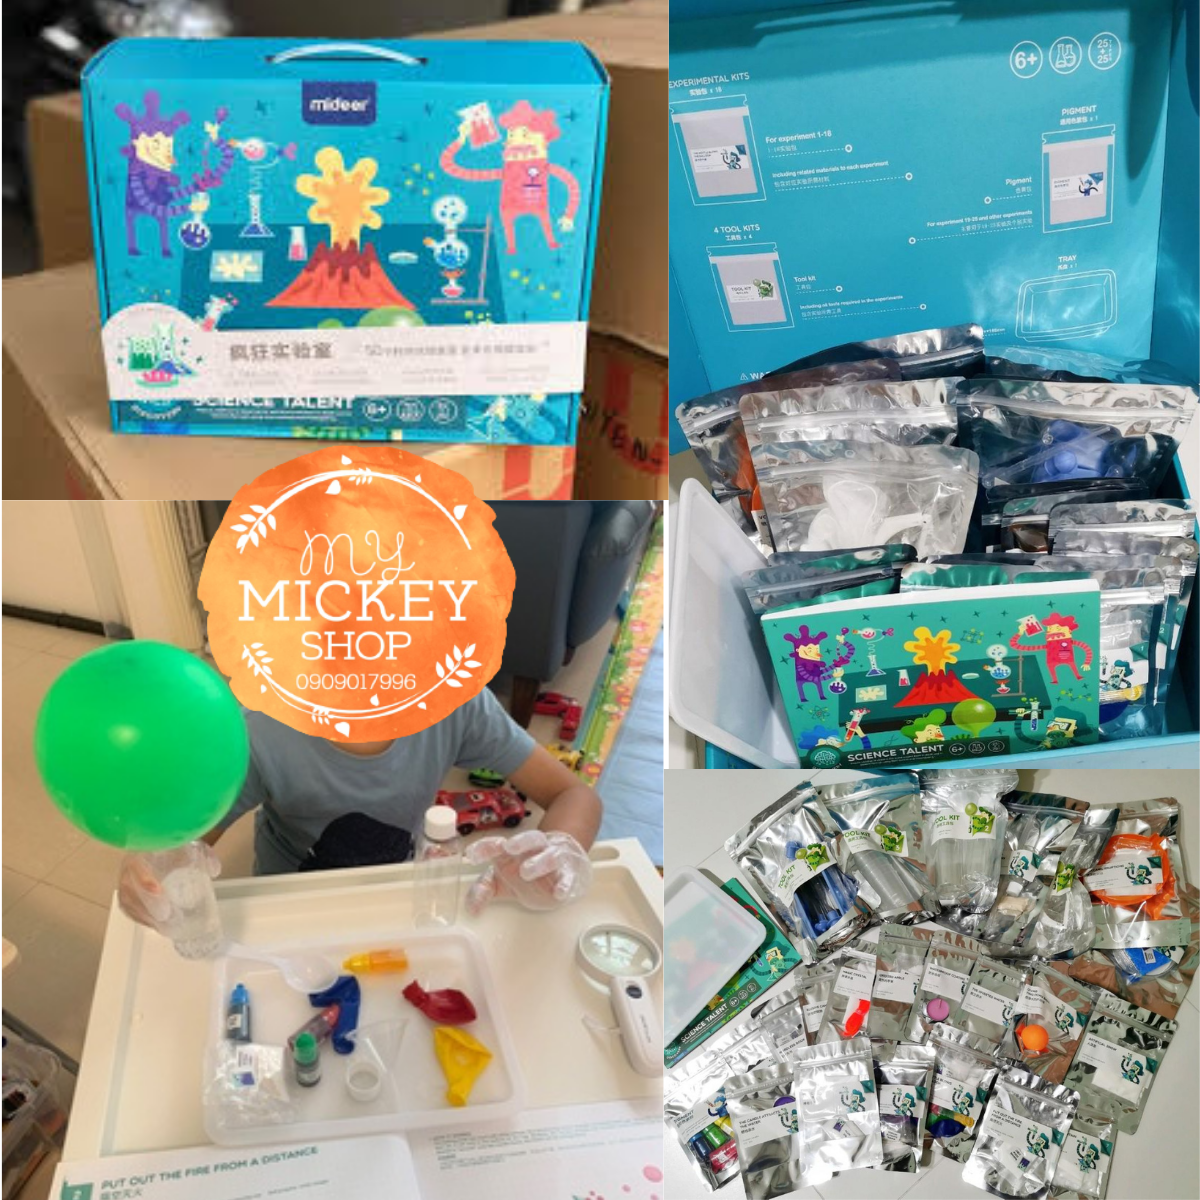 Mideer Science Talent - Bộ Trò Chơi Thực hành thí nghiệm Khoa Học Cho Trẻ 6+ - My Mickey Shop (có bản dịch HDSD)